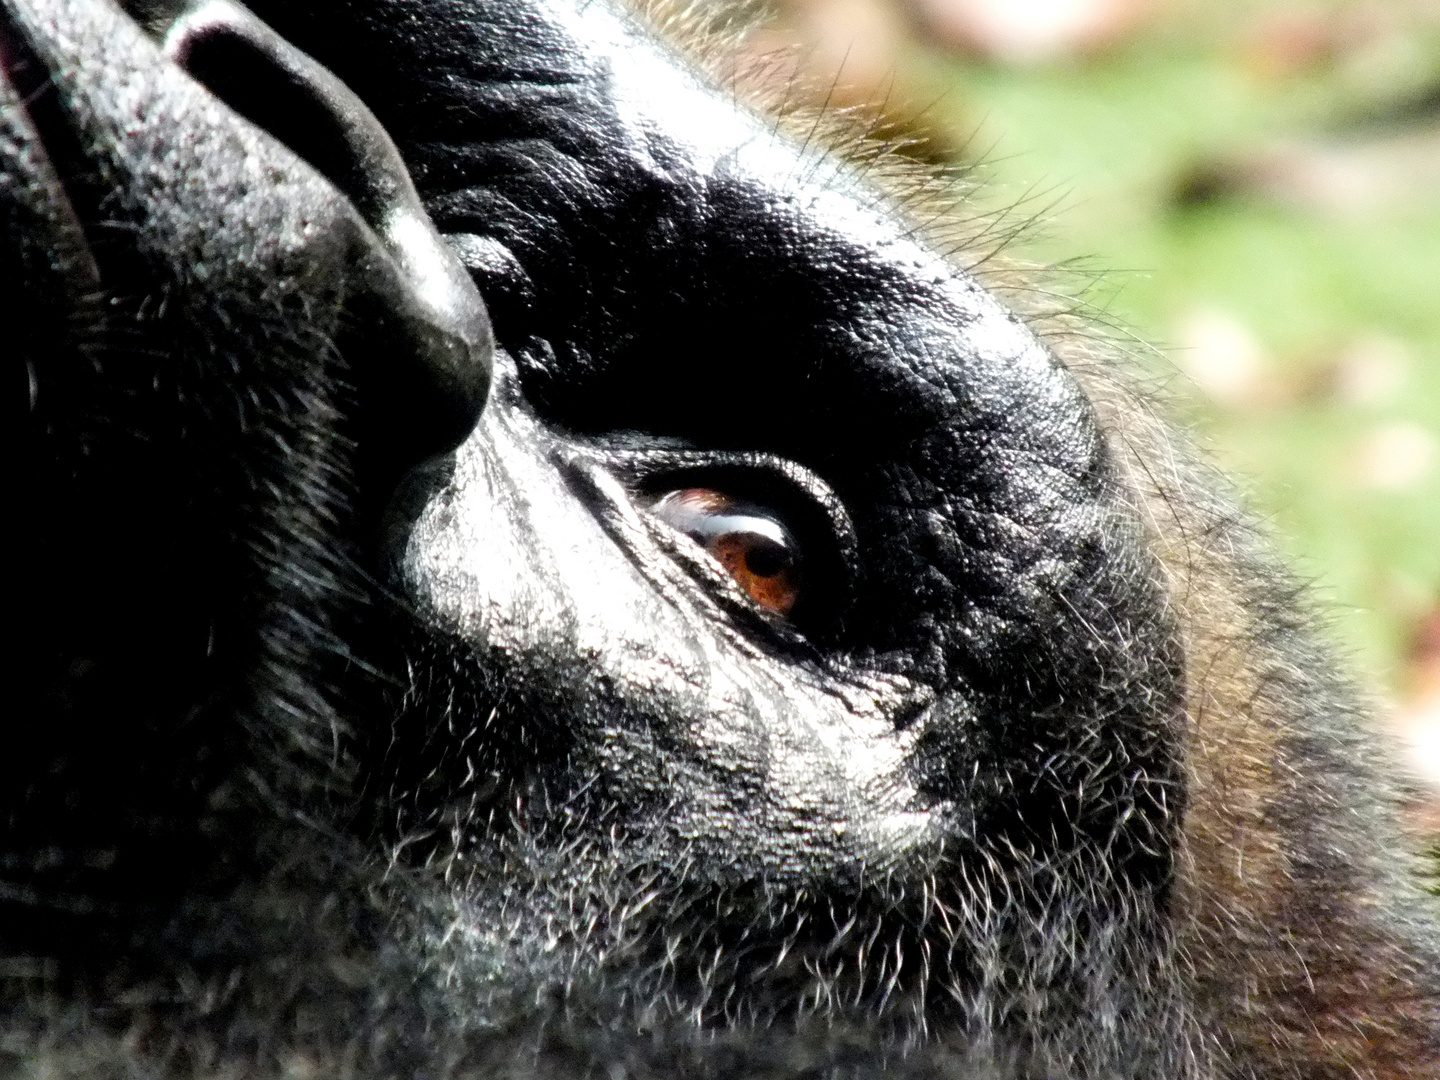 Das Auge des Gorillas